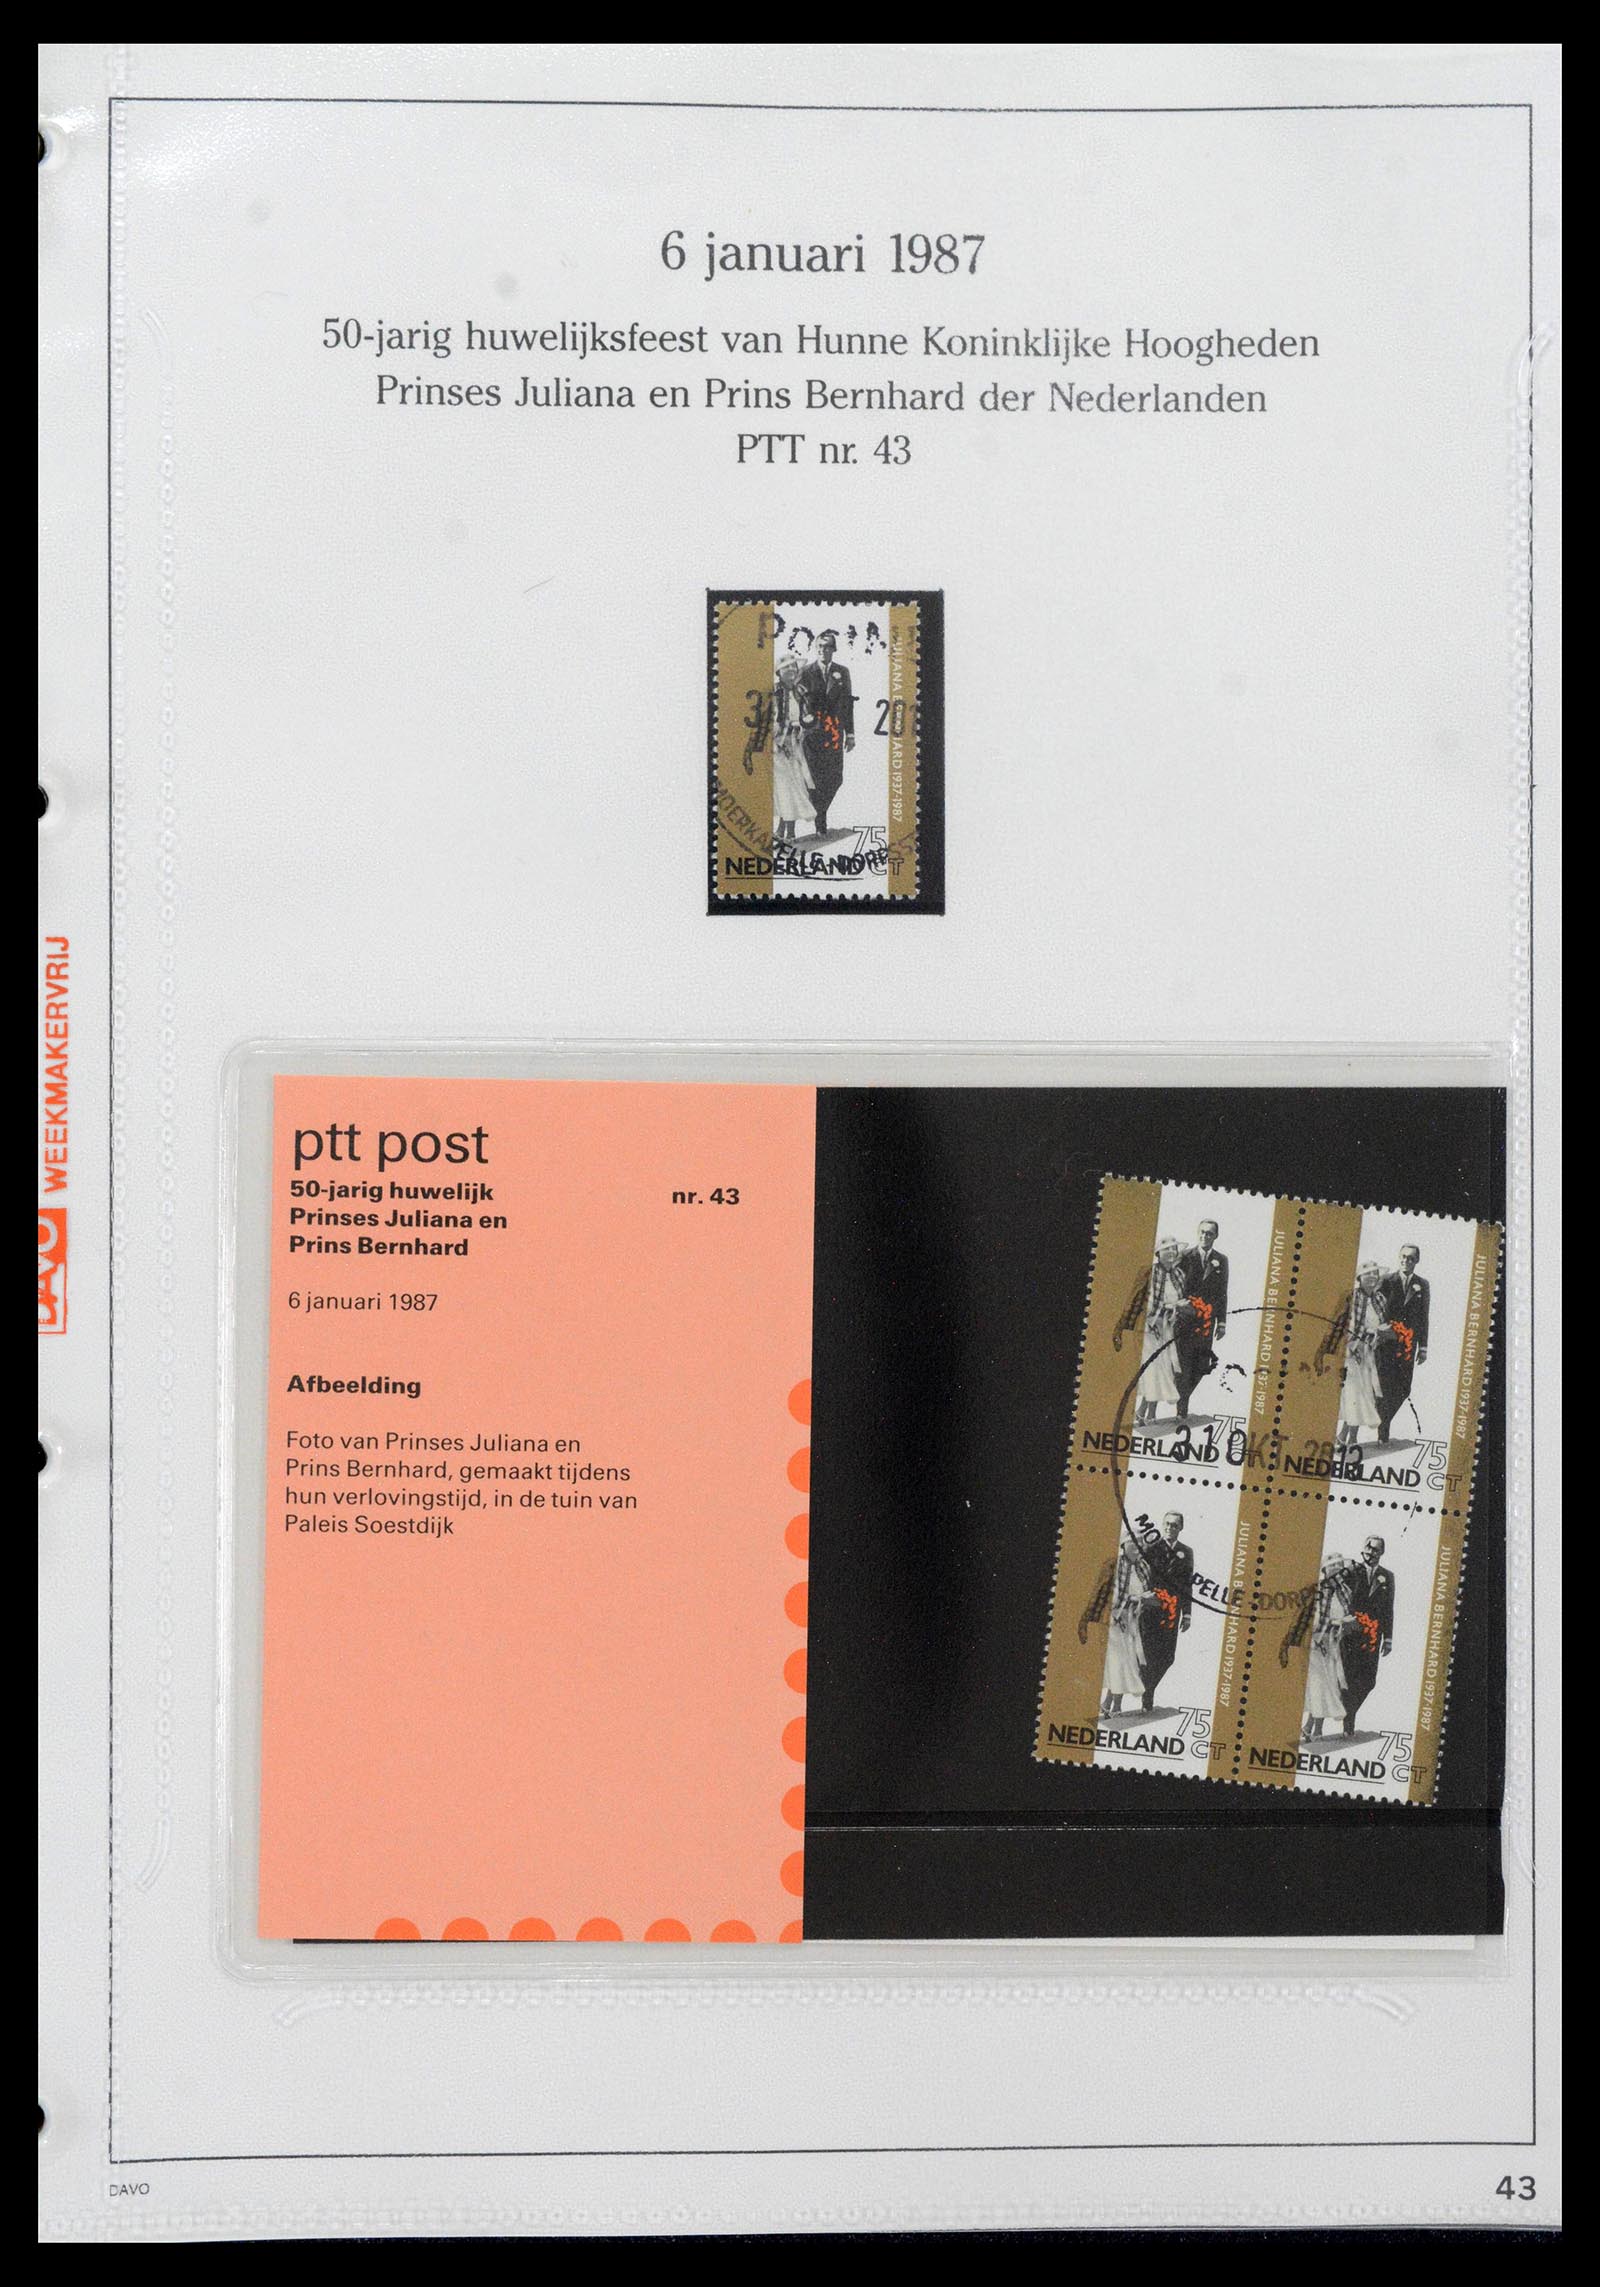 39121 0043 - Stamp collection 39121 Netherlands presentationpacks 1982-2001.